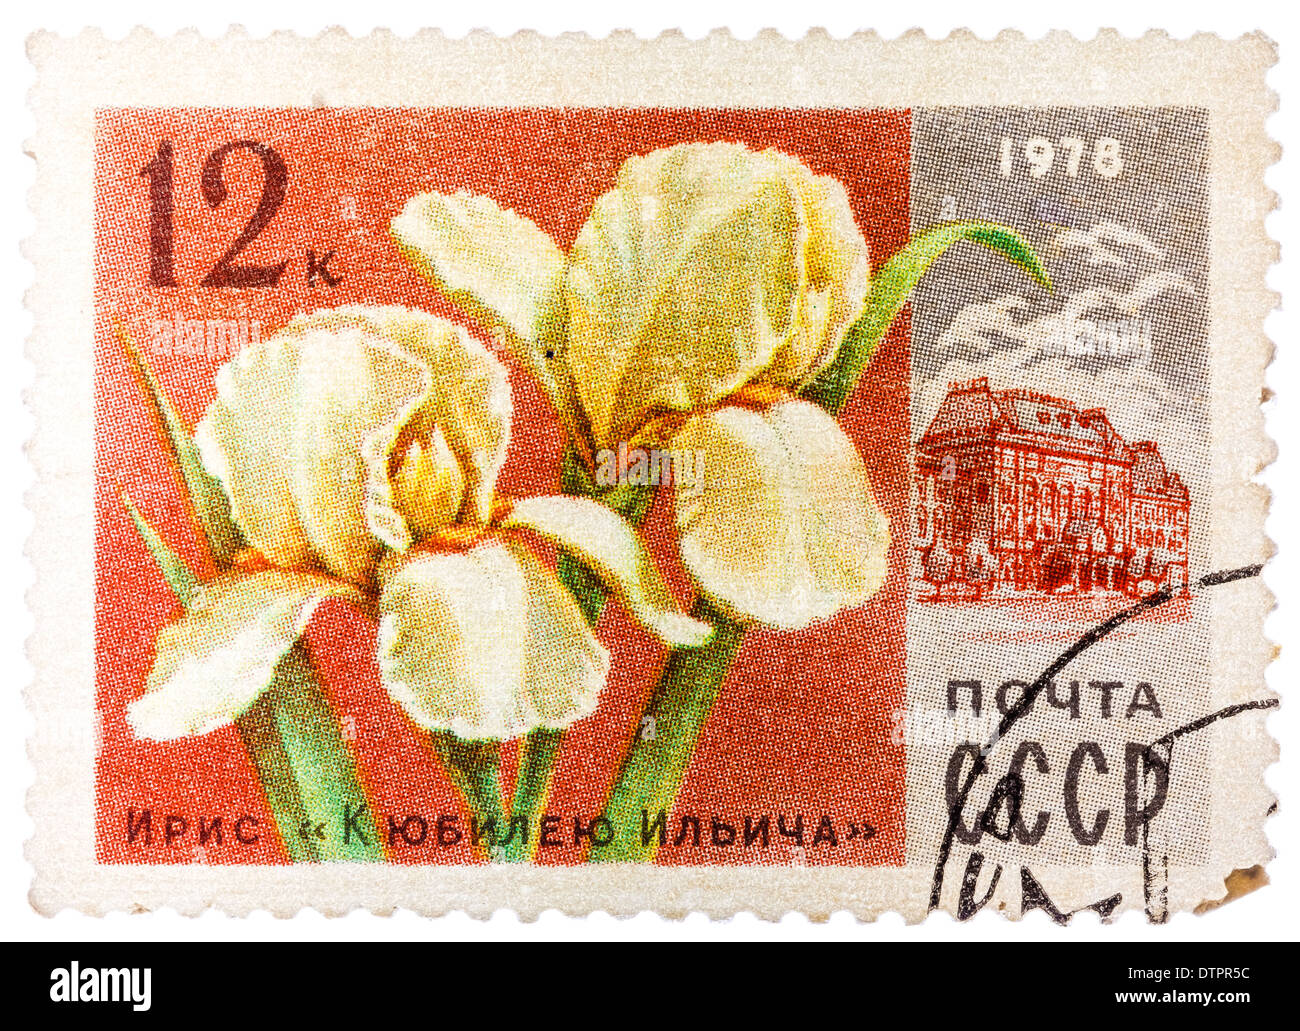 Timbres en URSS (CCCP, Union soviétique) montre l'image de Ilich anniversaire musée central de Lénine et de l'iris Banque D'Images